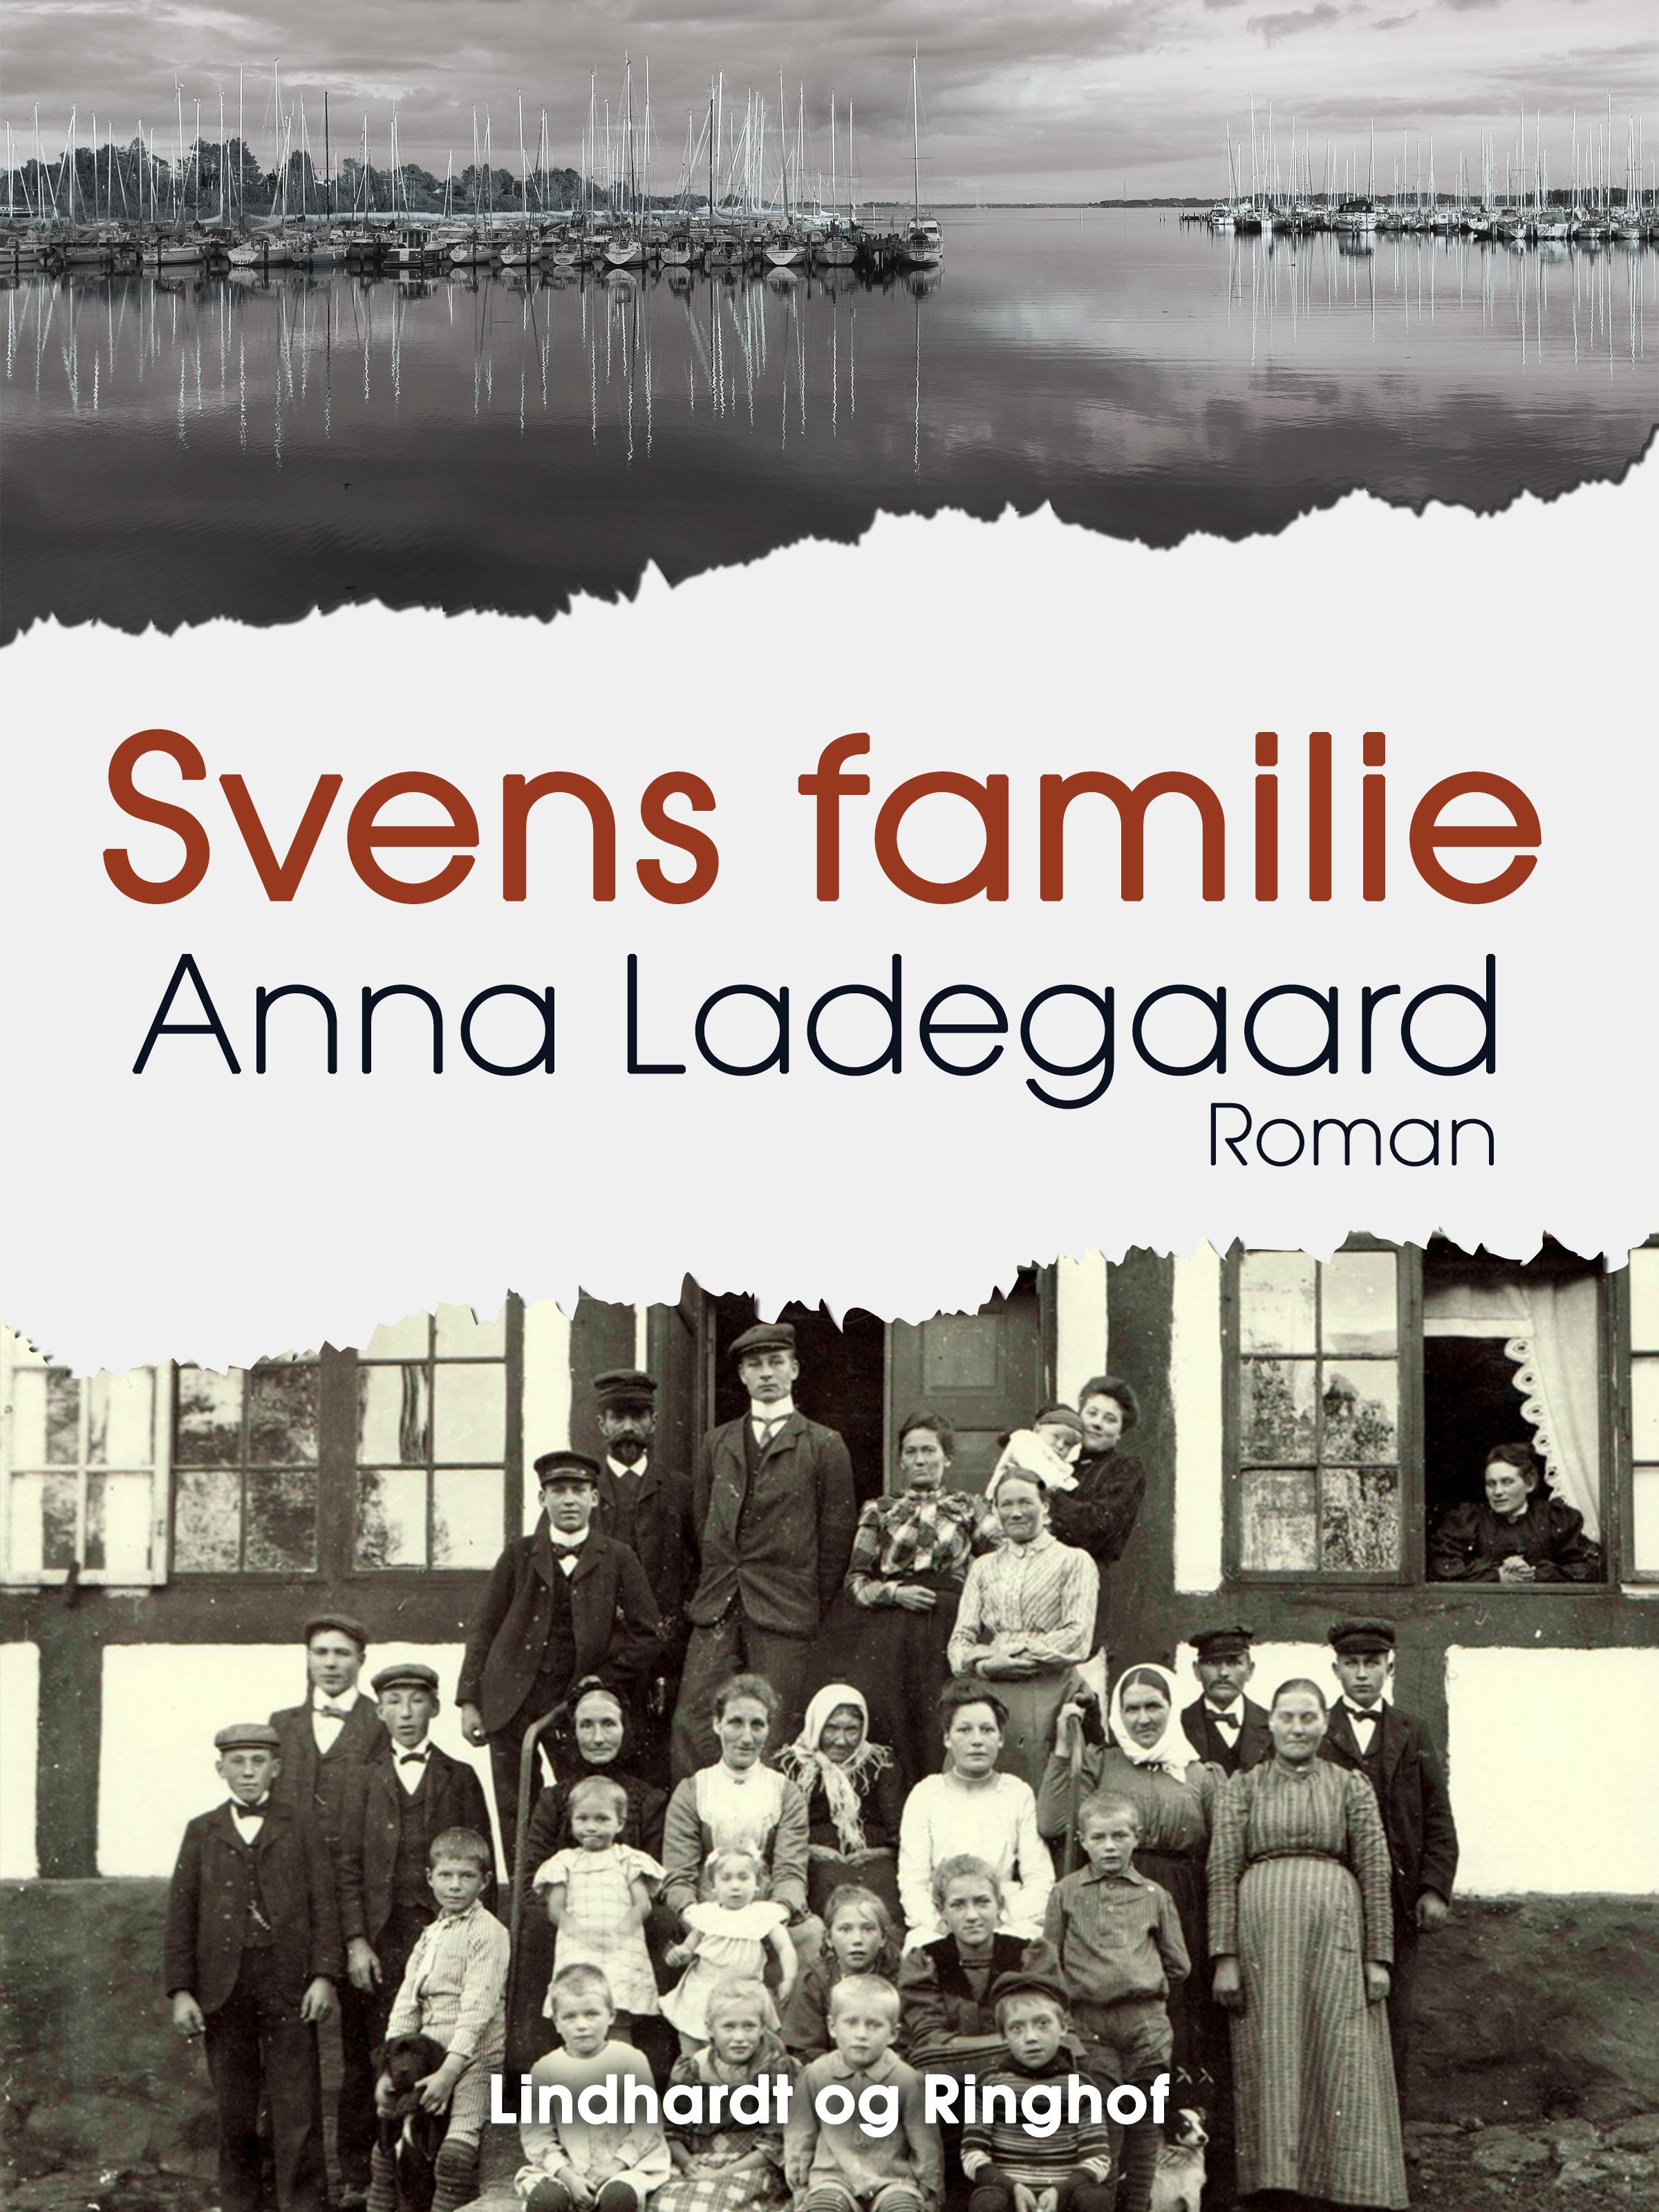 Svens familie, e-bok av Anna Ladegaard